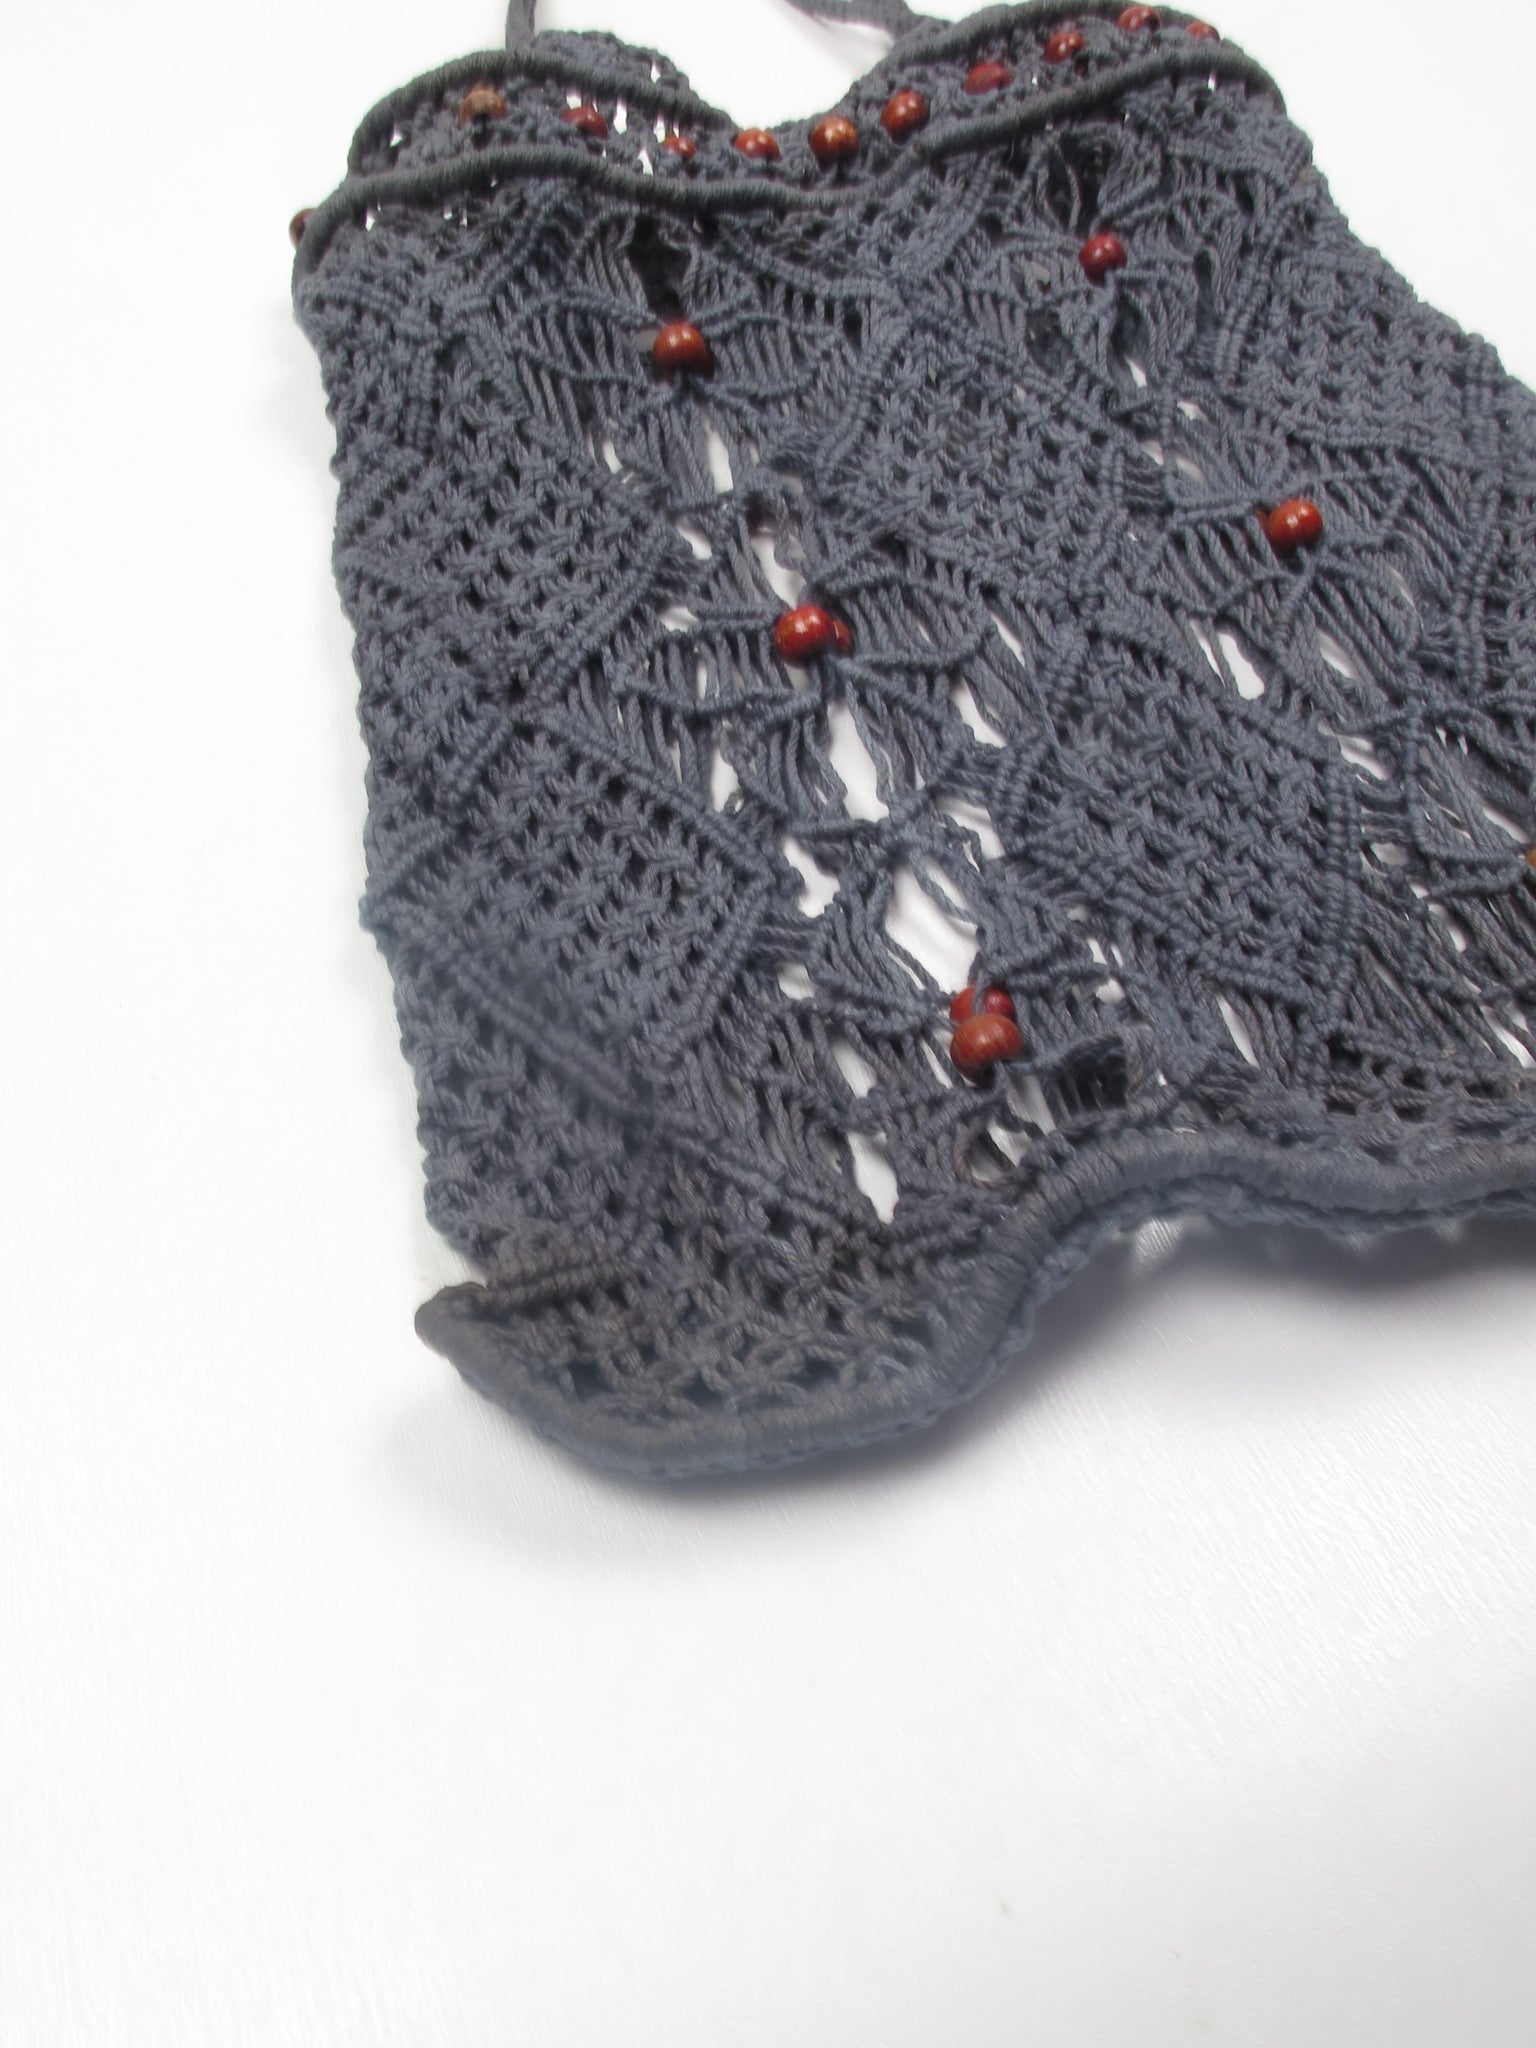 Vintage Charcoal Black Crochet Bag - The Harlequin